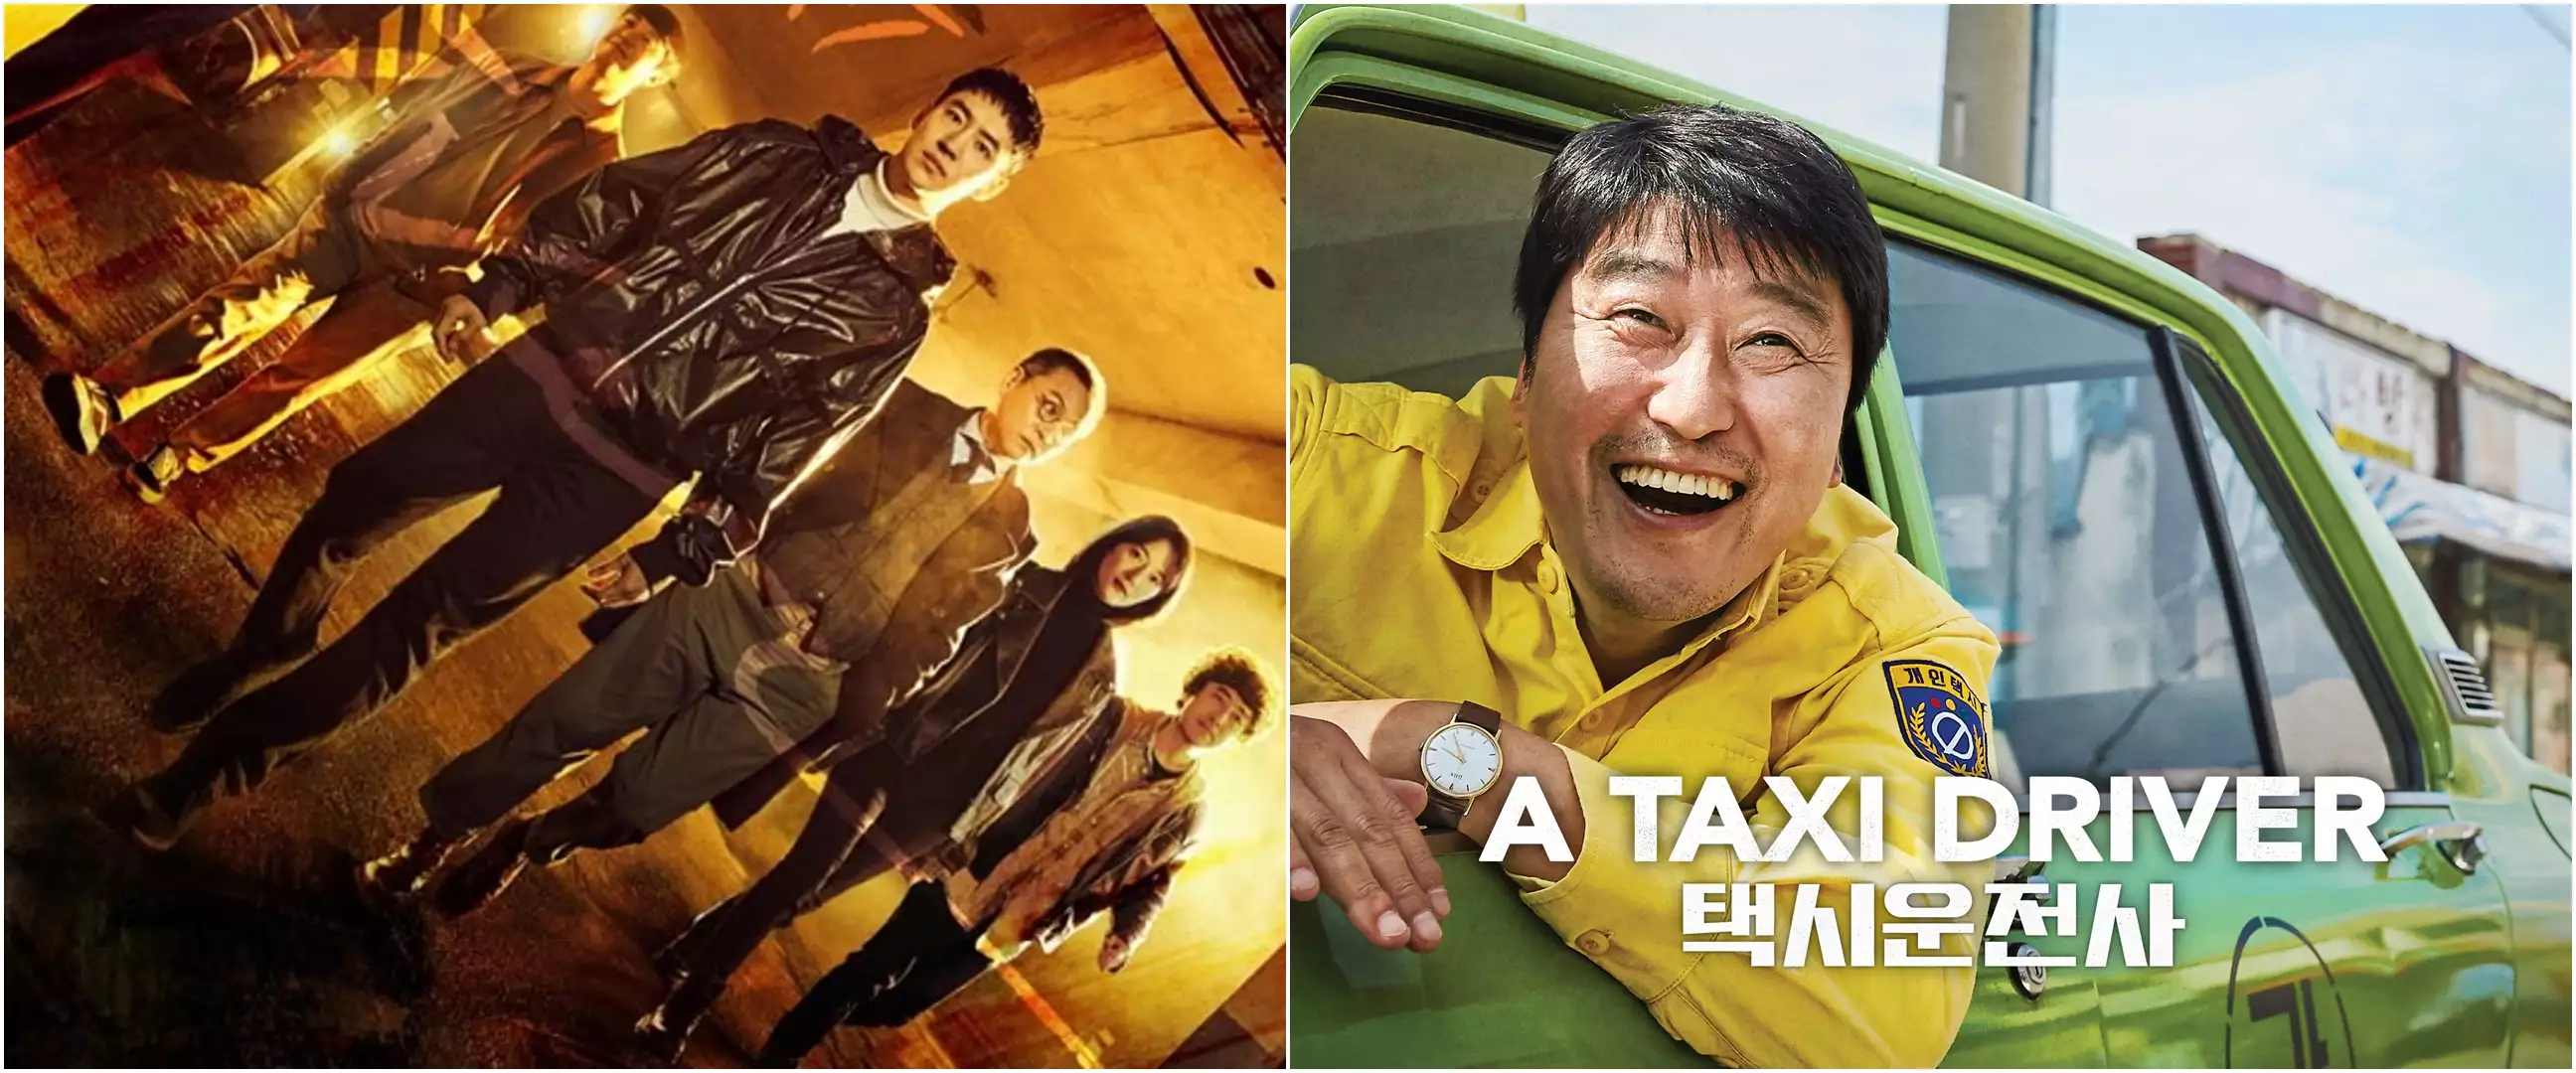 5 Film dan drama Korea kisahkan petualangan sopir taksi, menegangkan